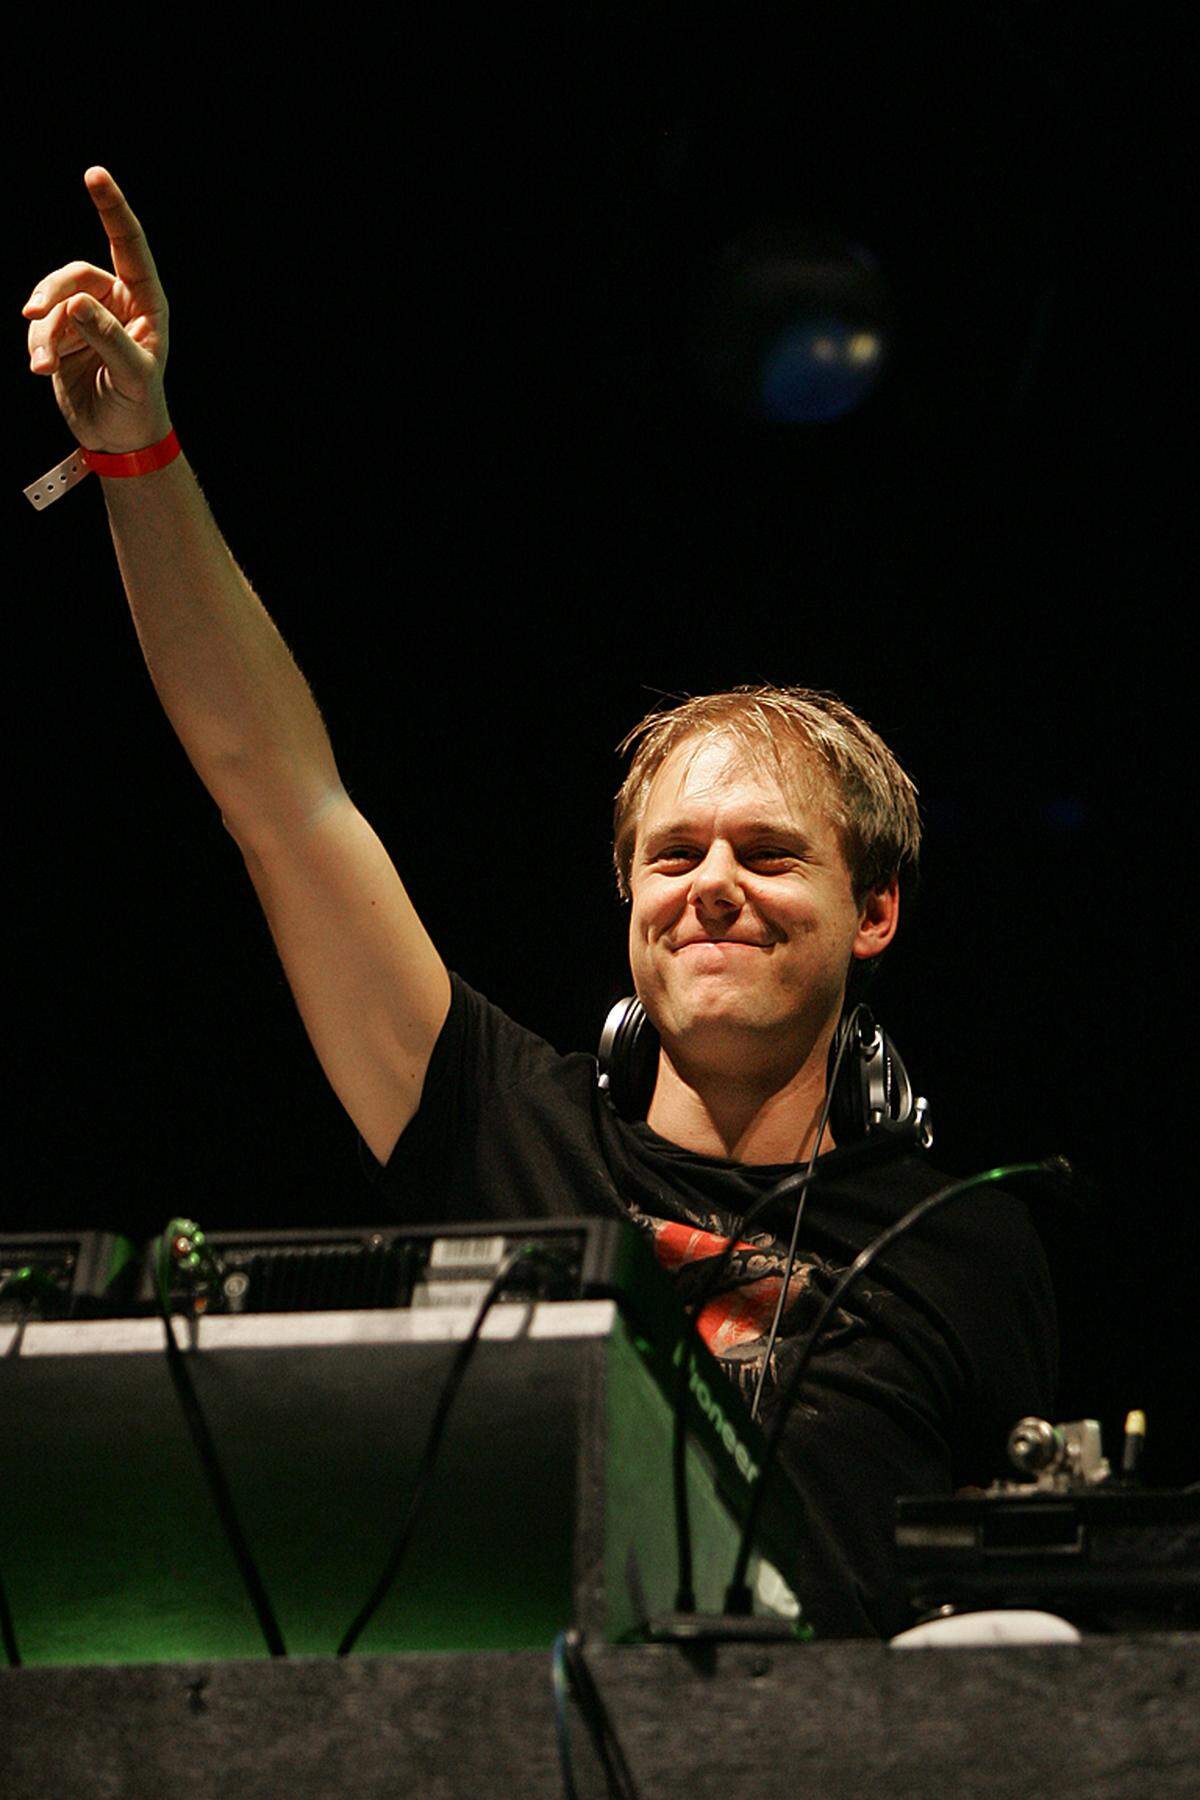 Der Niederländer Armin van Buuren, seines Zeichens Trance-Produzent und -DJ, kommt ebenfalls auf 40 Millionen.